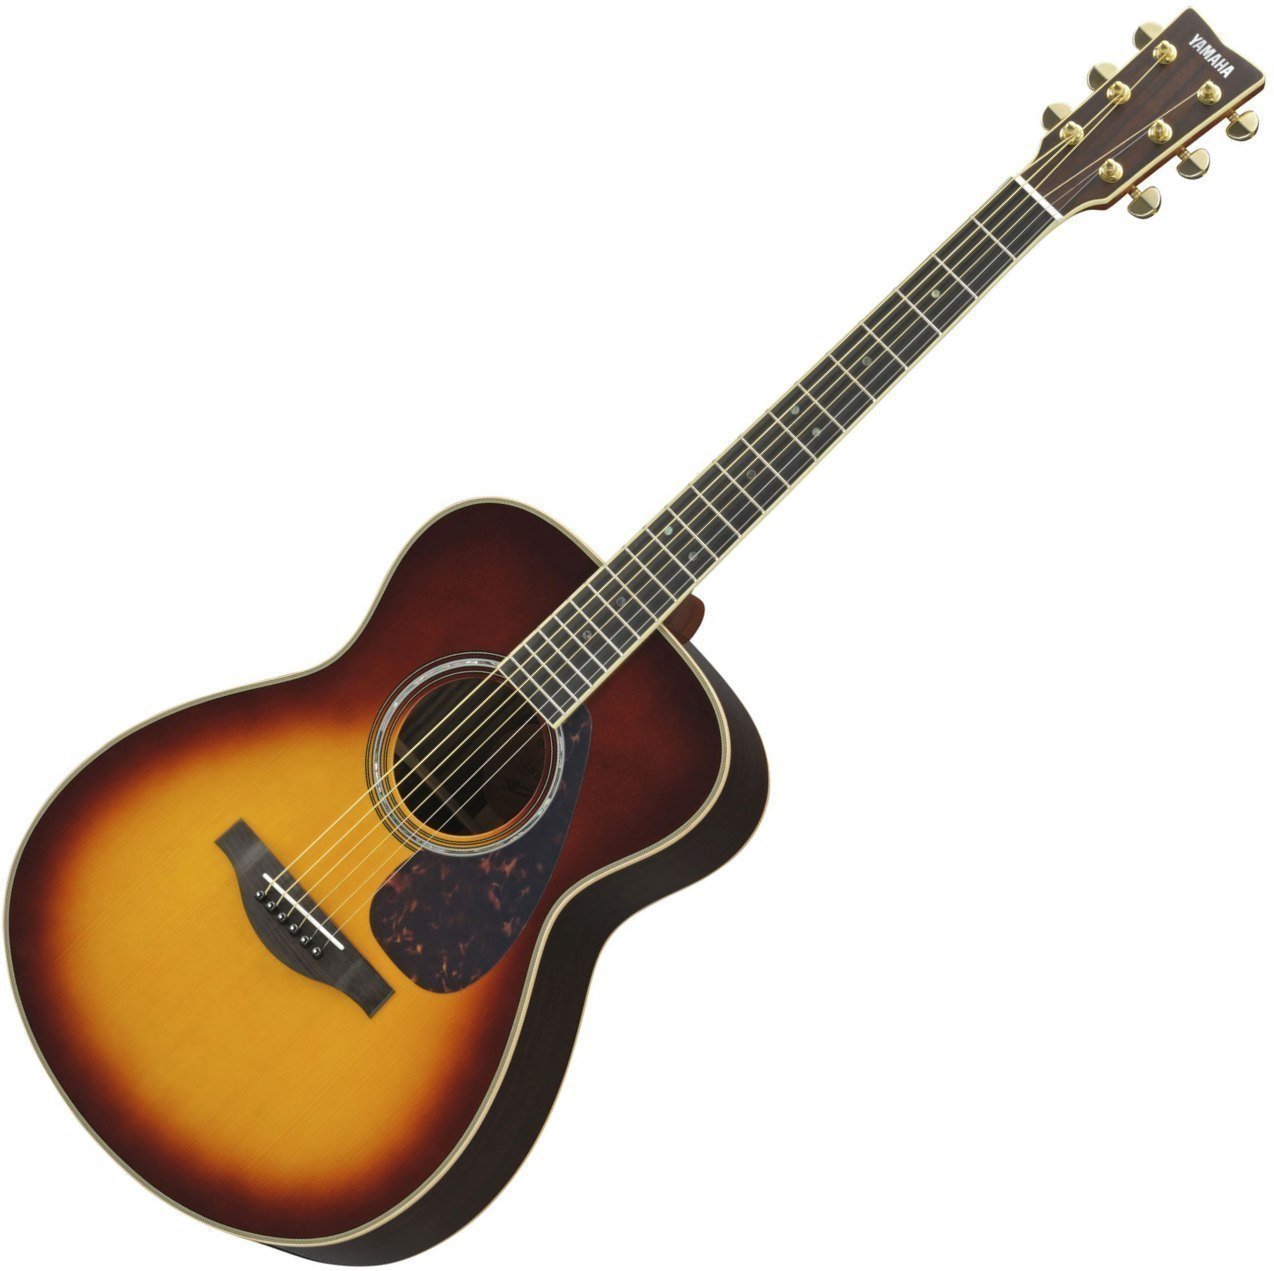 Ηλεκτροακουστική Κιθάρα Jumbo Yamaha LS16 A.R.E. BS Brown Sunburst